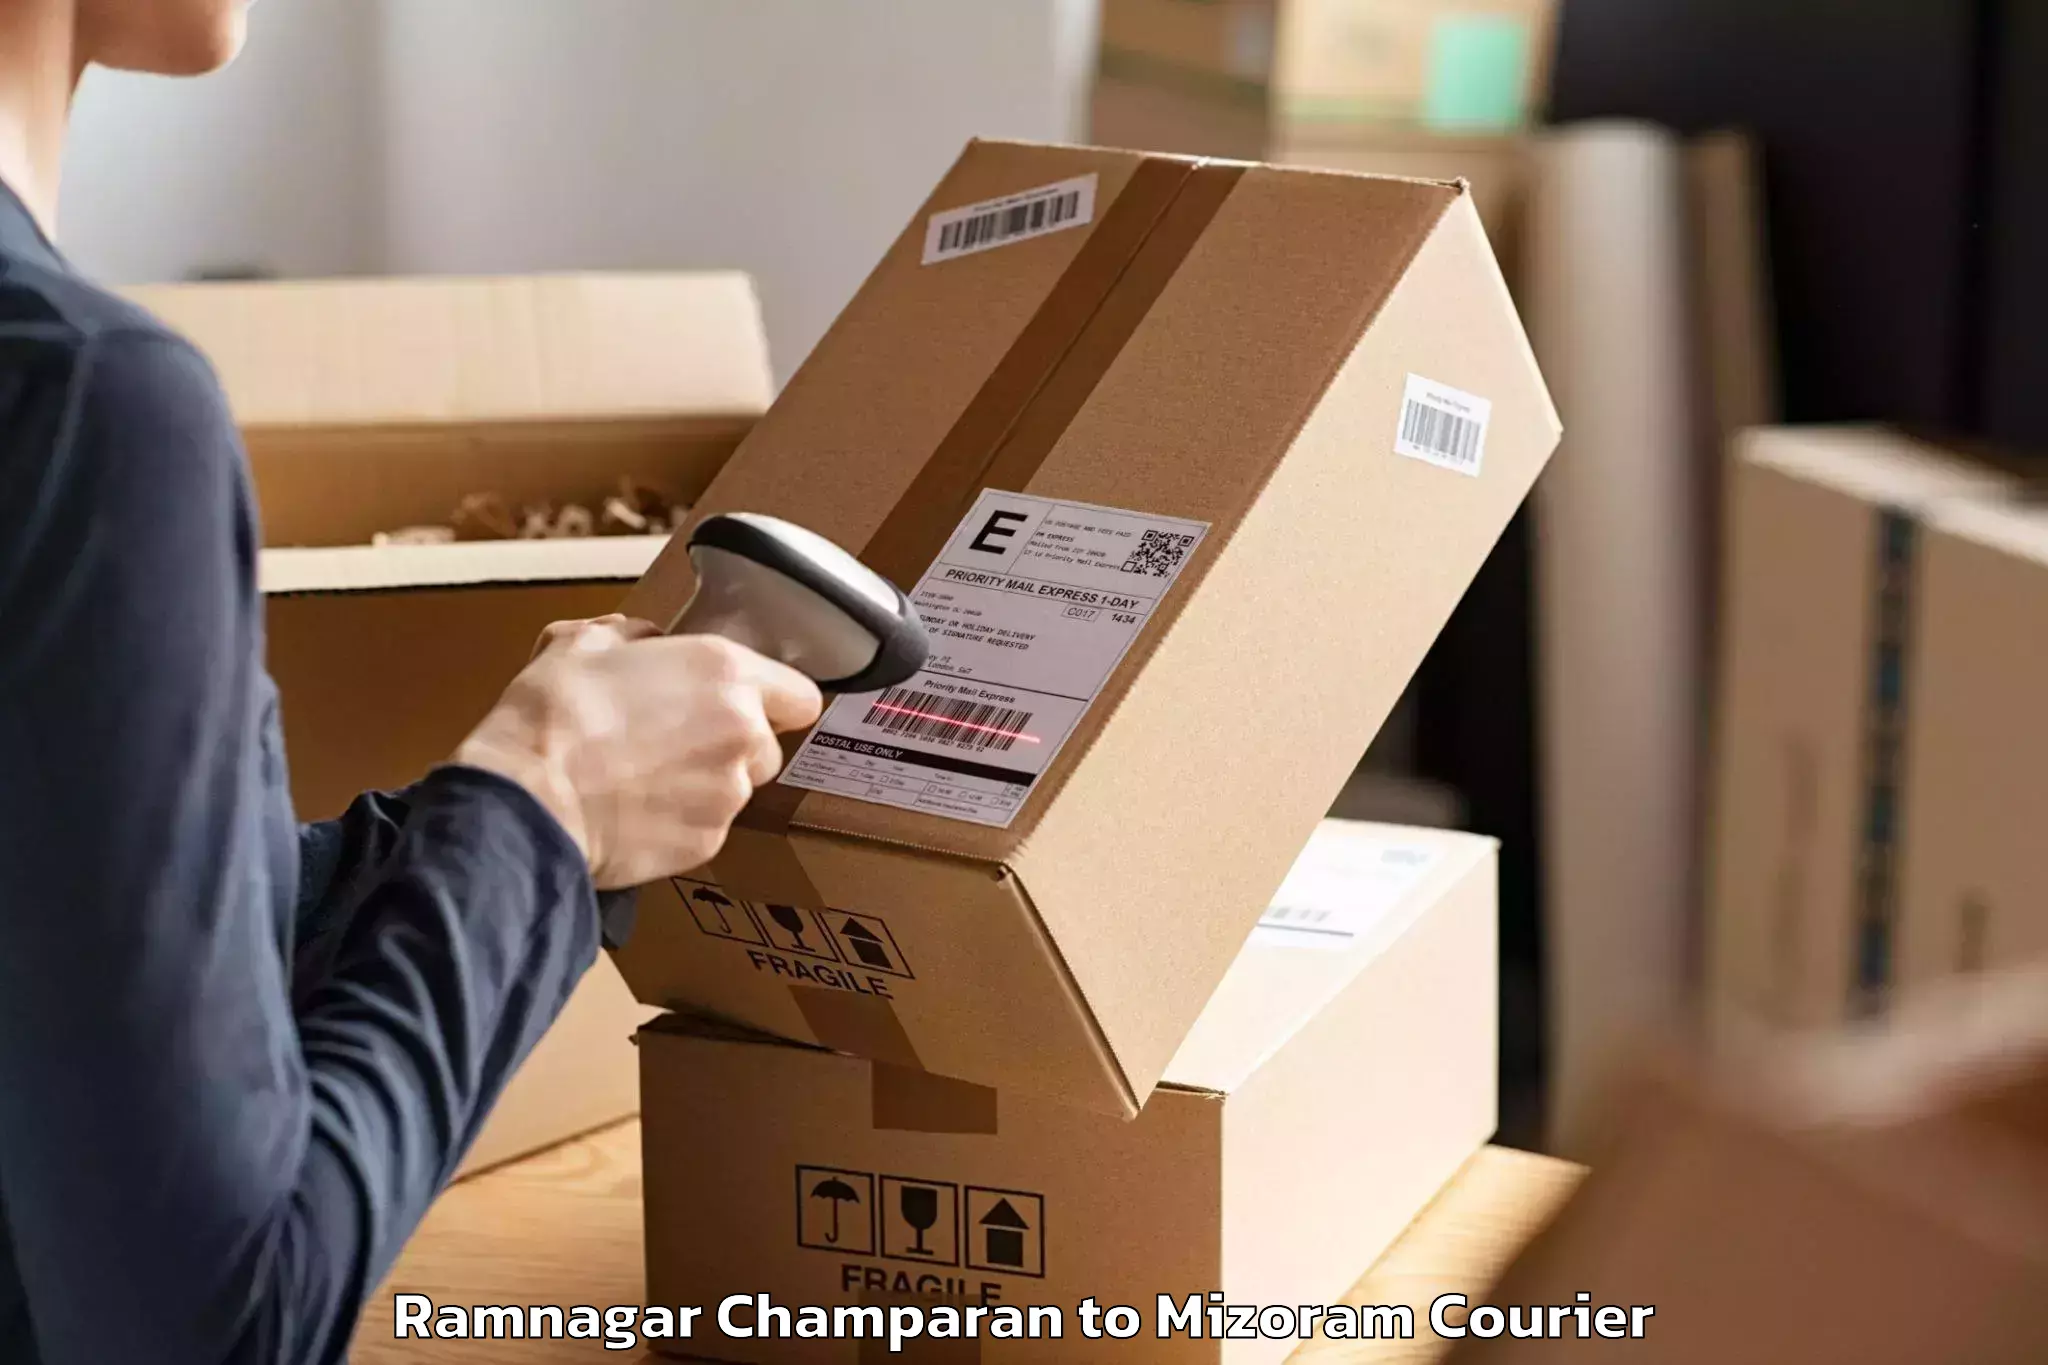 Furniture moving services Ramnagar Champaran to Mizoram